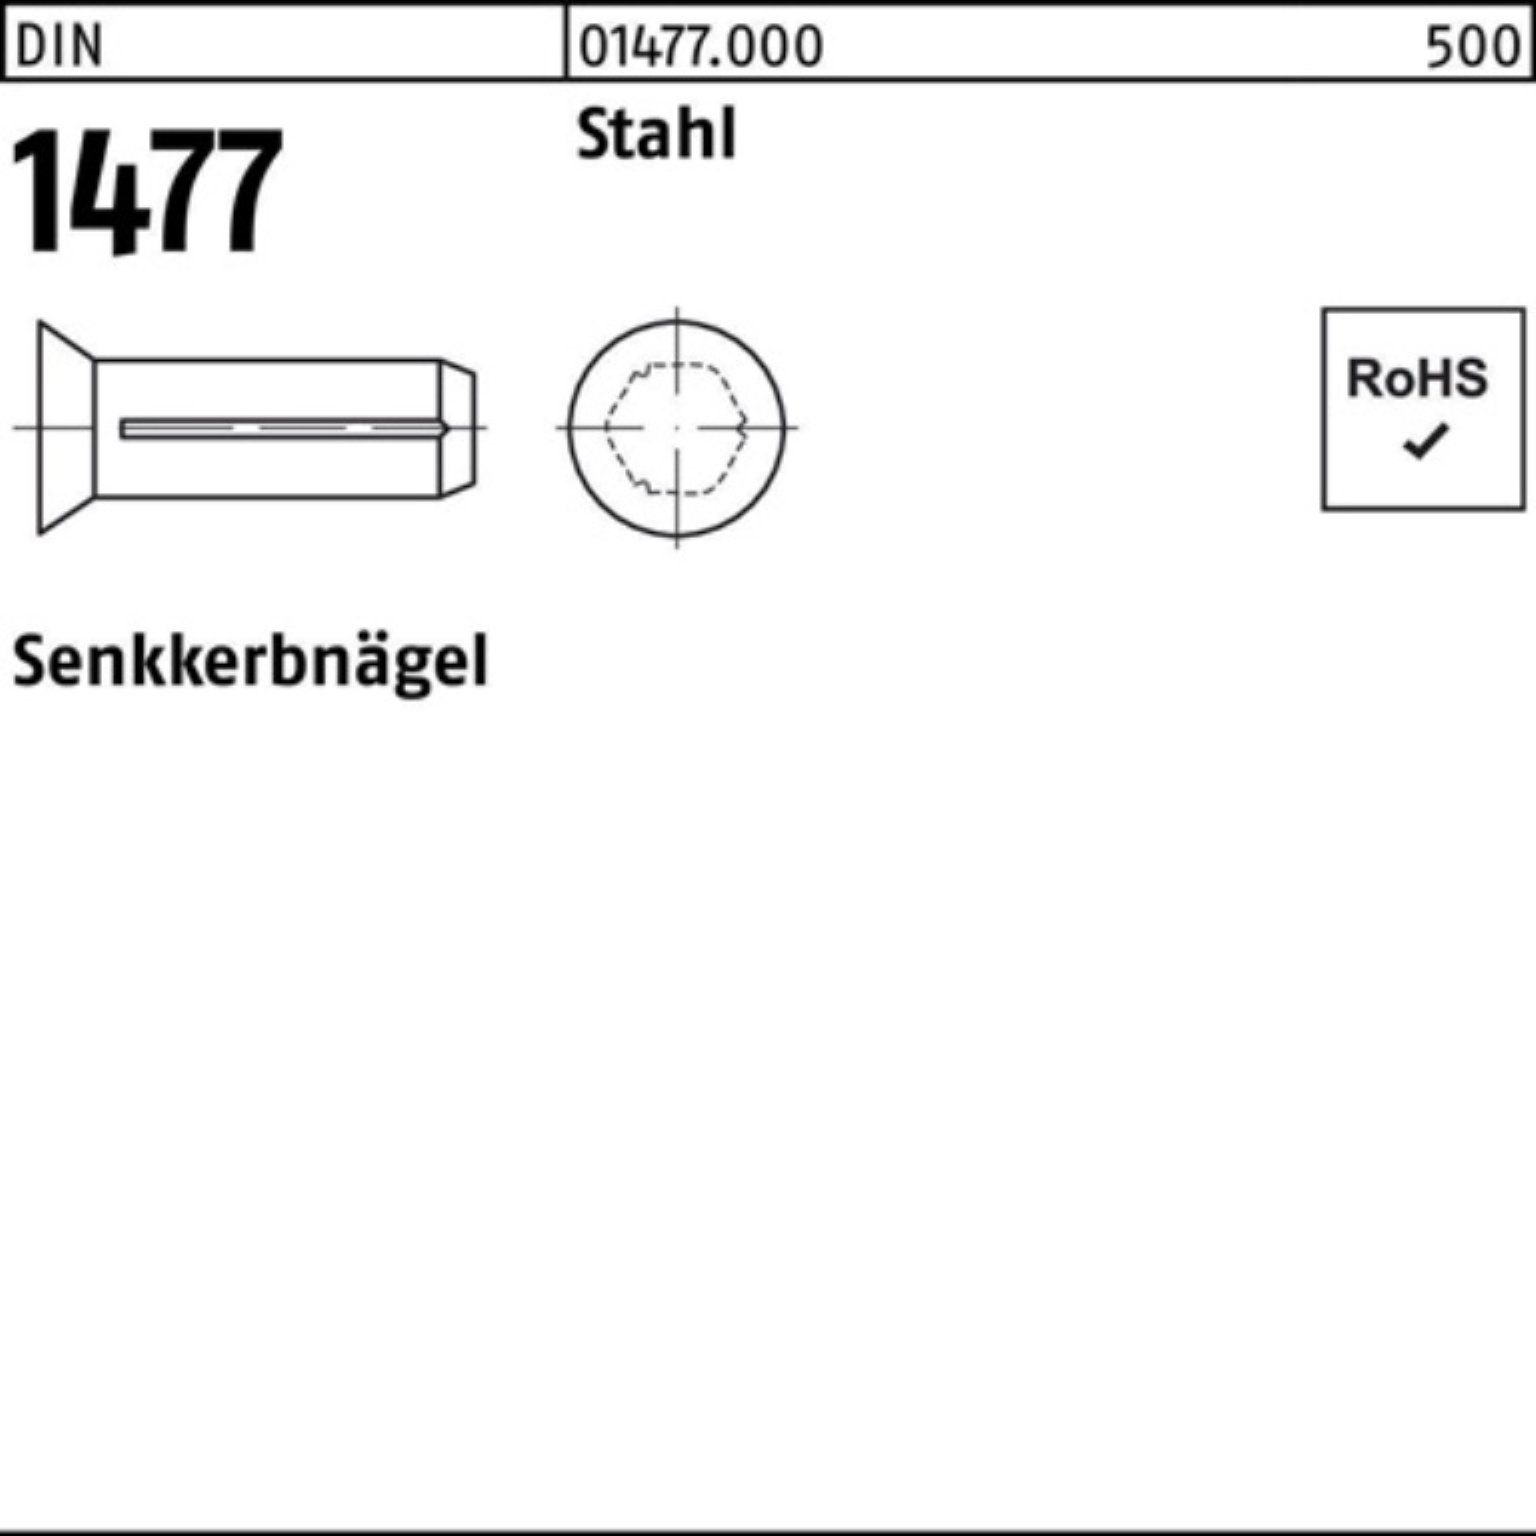 Stah Nagel Reyher Pack Stück 500er 500 DIN 12 Stahl 1477 DIN 4x Senkkerbnagel 1477